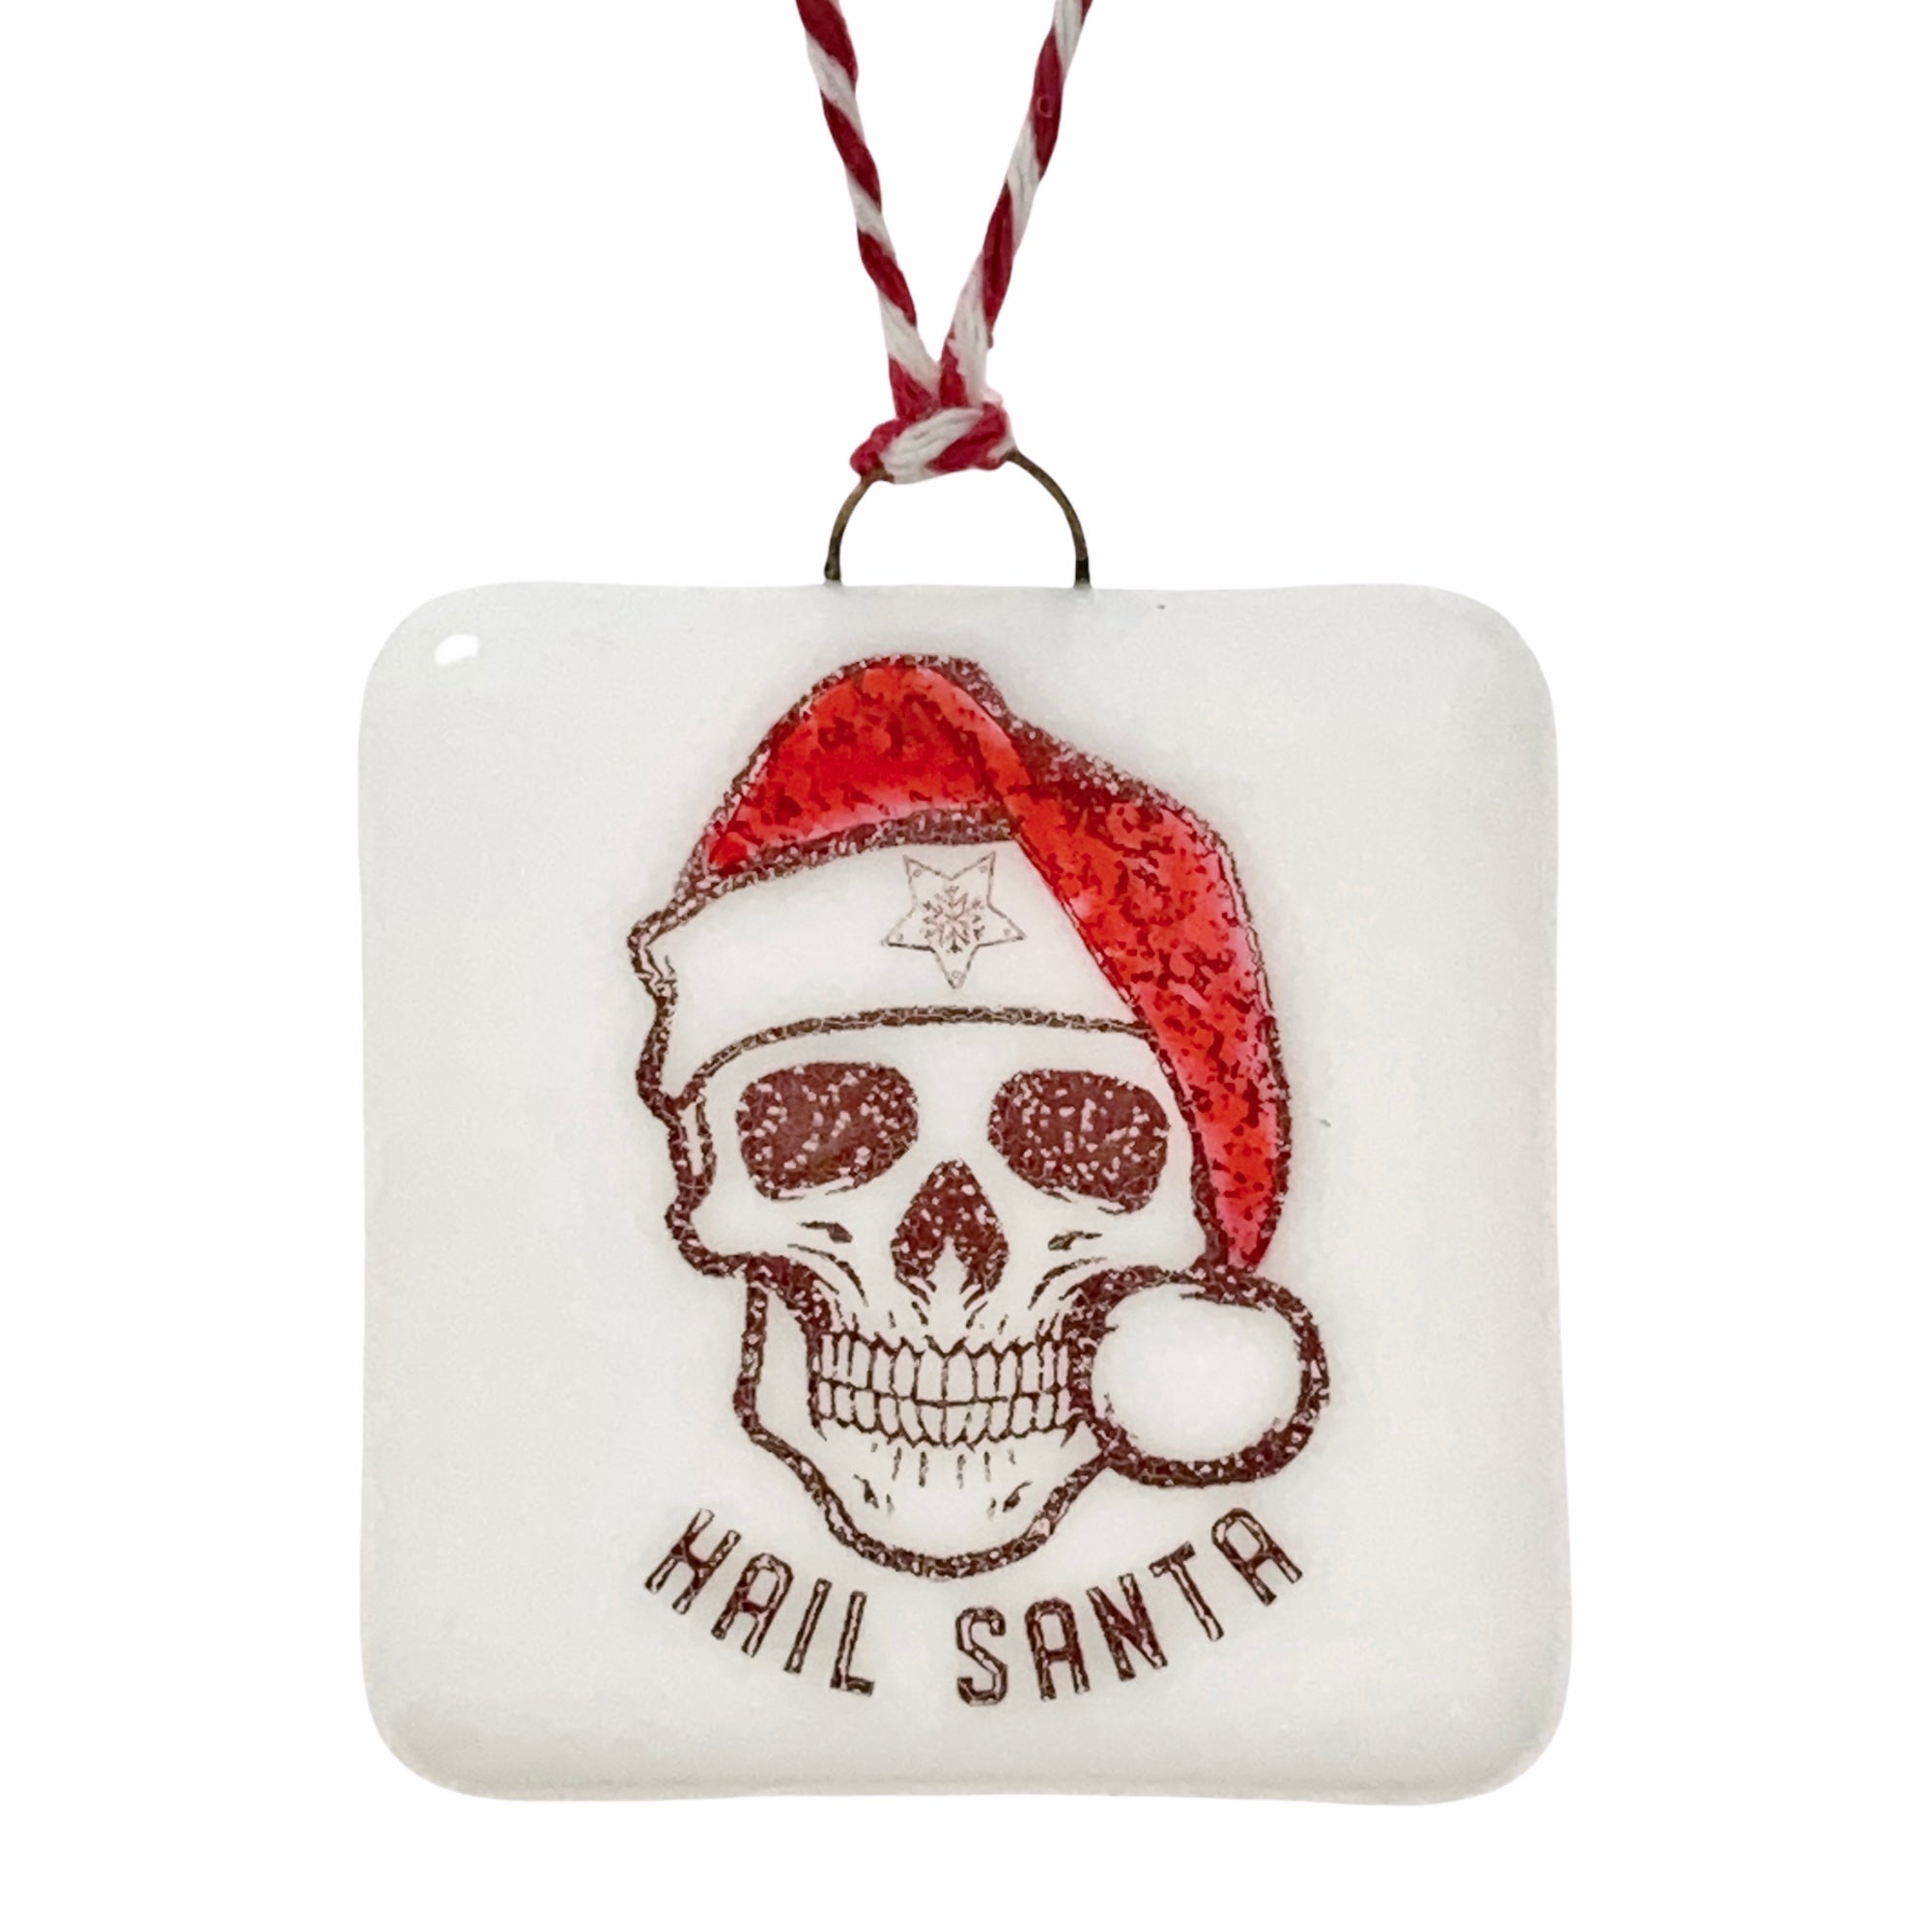 Hail Santa Skull Ornament